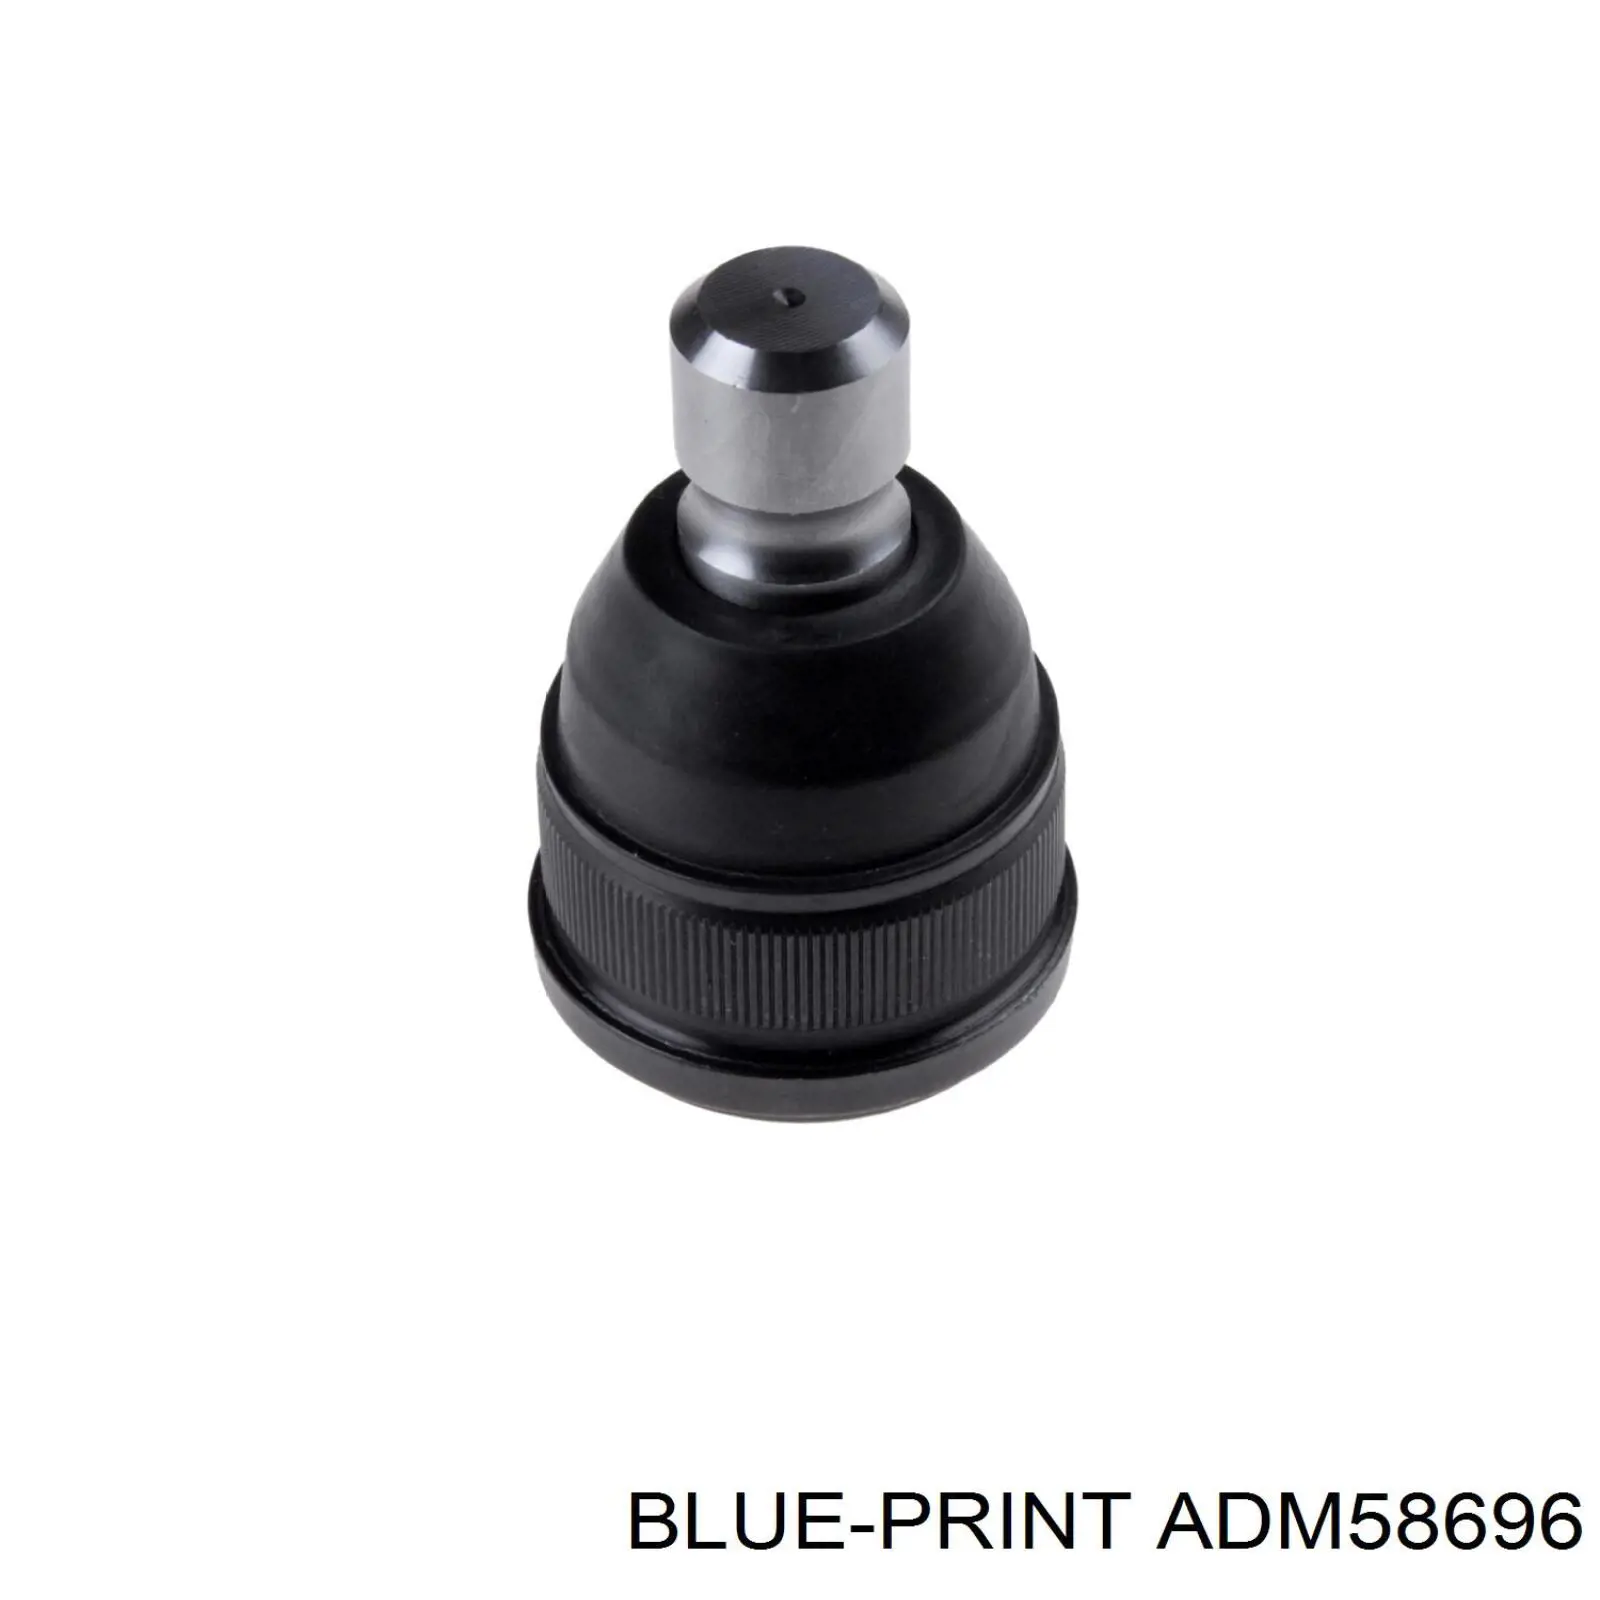 ADM58696 Blue Print rótula de suspensión inferior